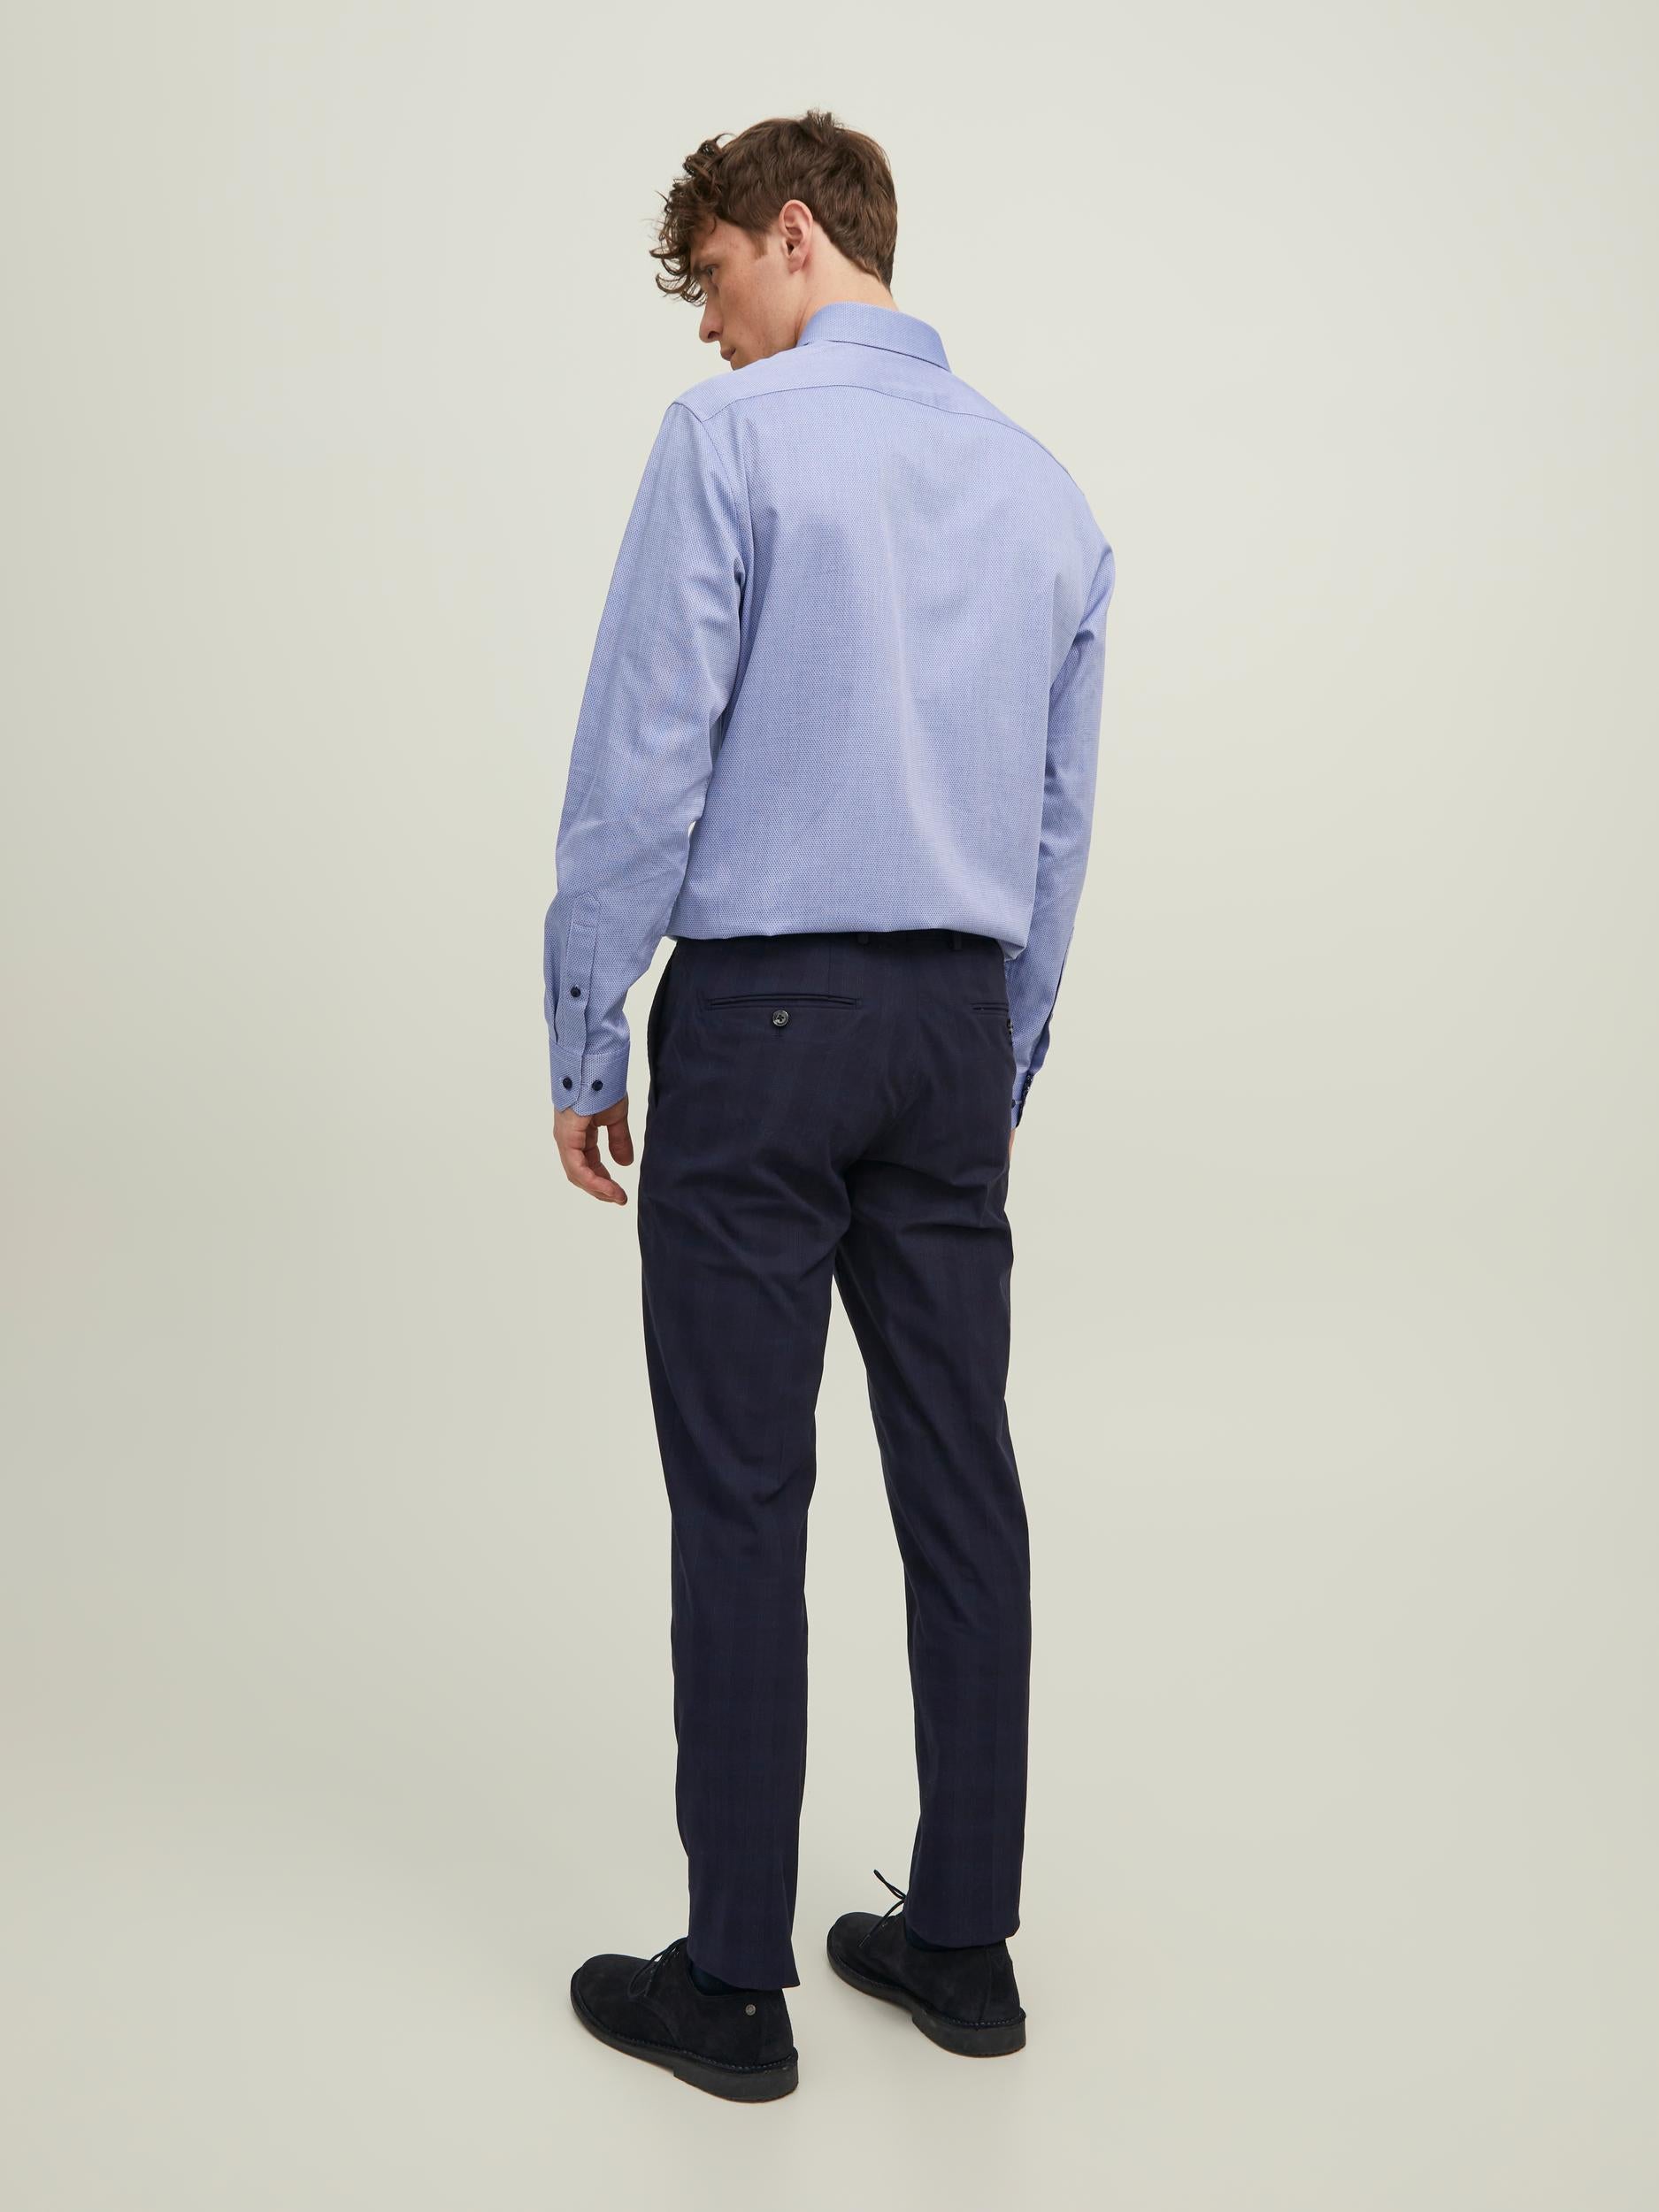 Men's Parker Detail Shirt Long Sleeve-Cashmere Blue-Back View